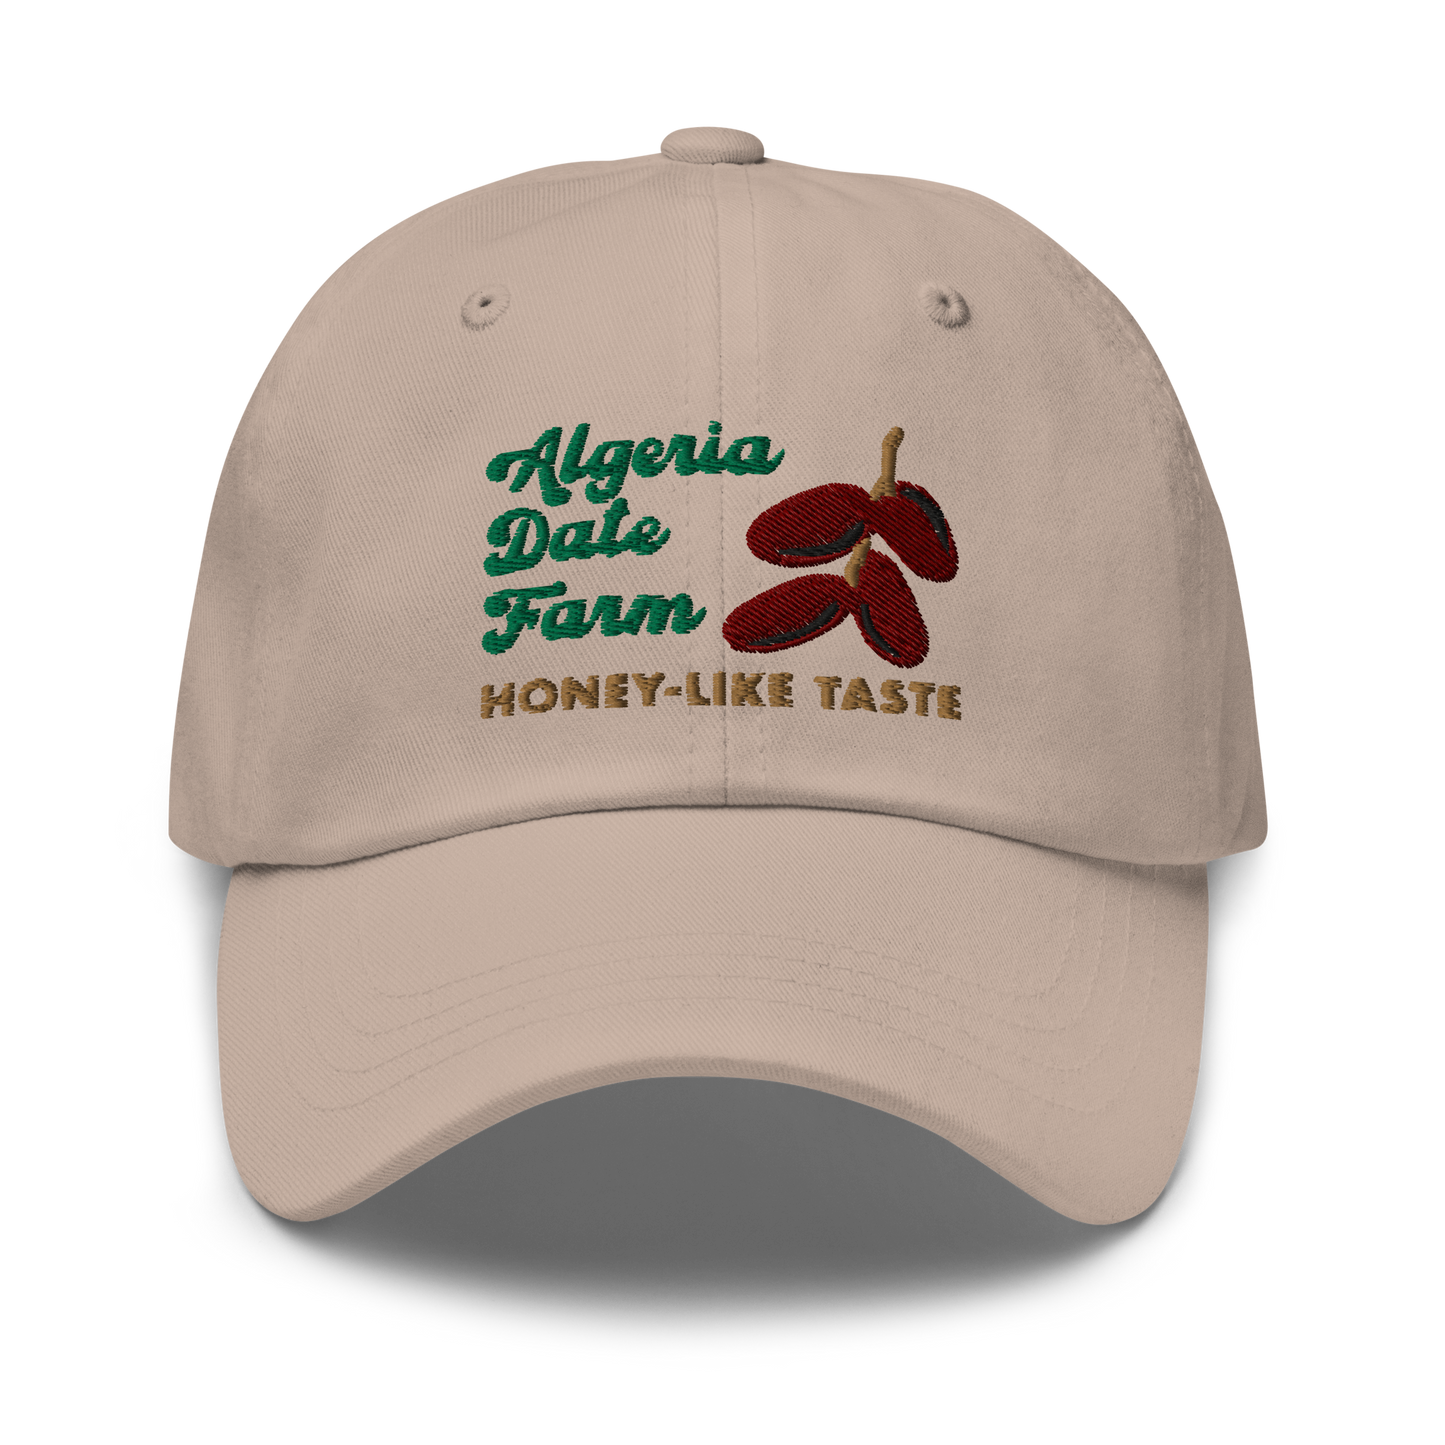 Algeria Date Farm Dad Hat